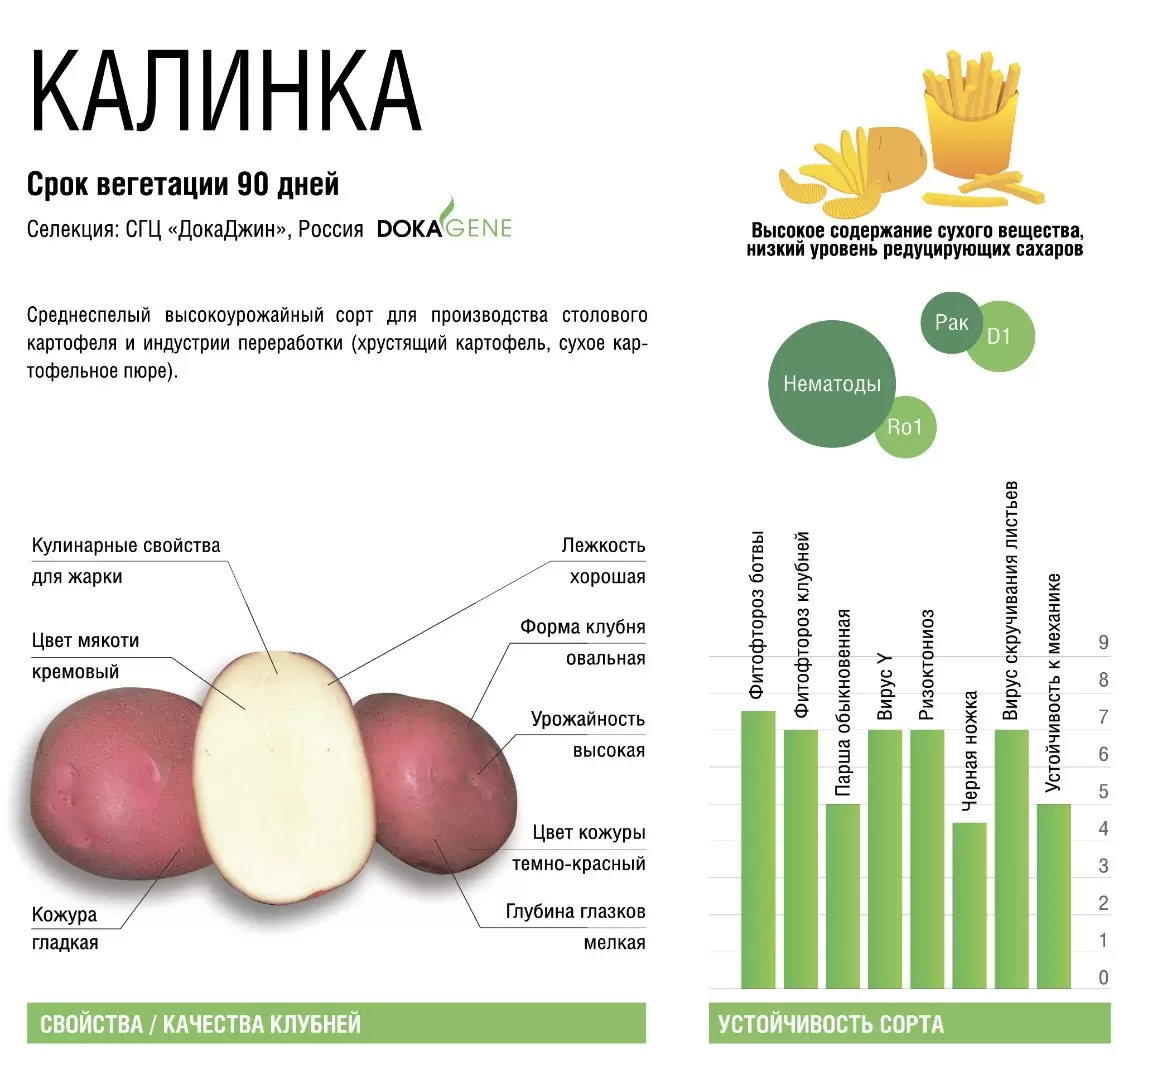 Калинка - картофель. Характеристики и отзывы